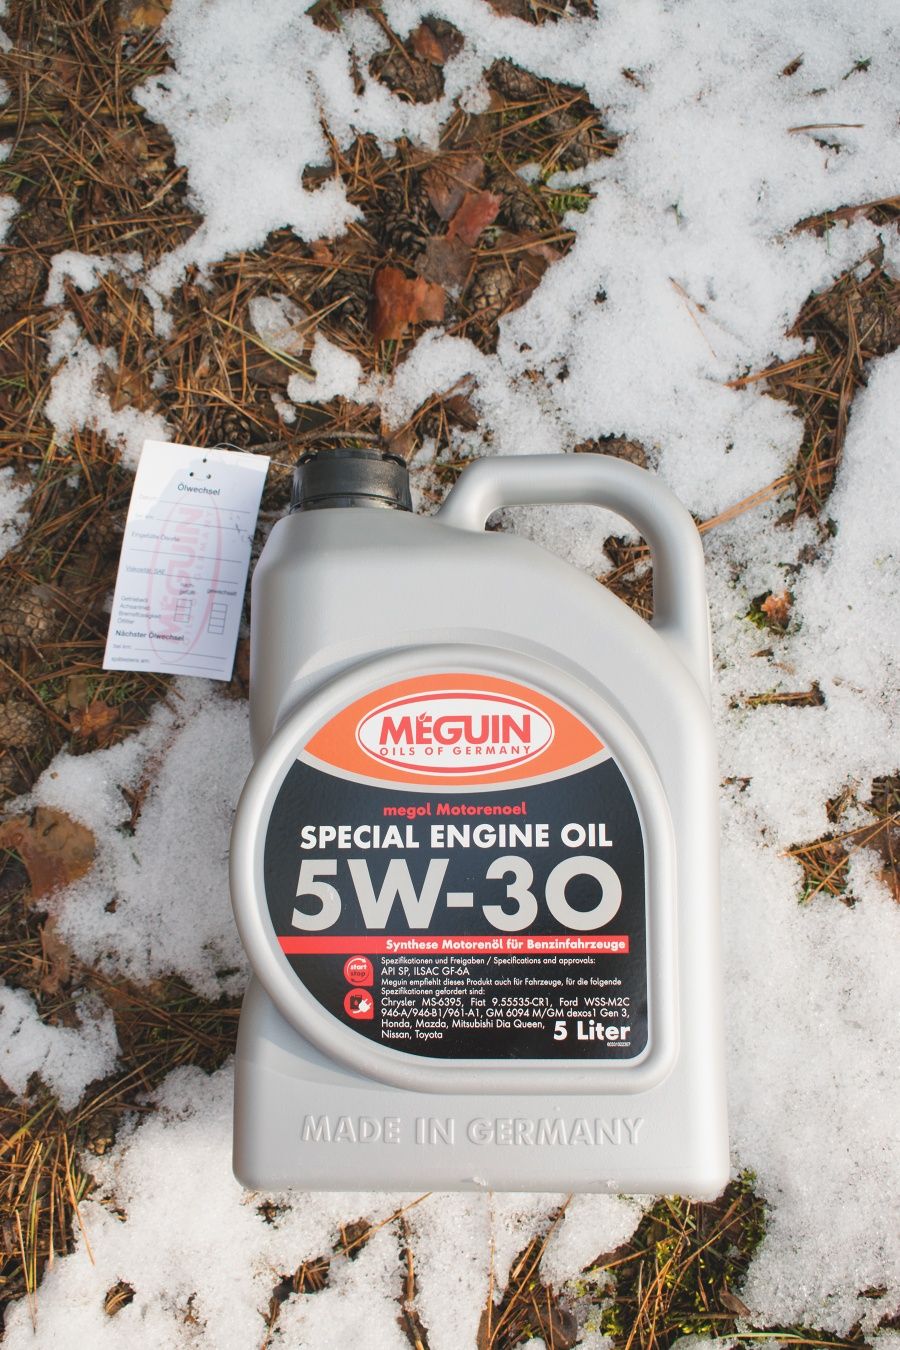 Meguin megol special engine oil 5w-30 (Ilsac GF6A, GM Dexos 1 gen3)